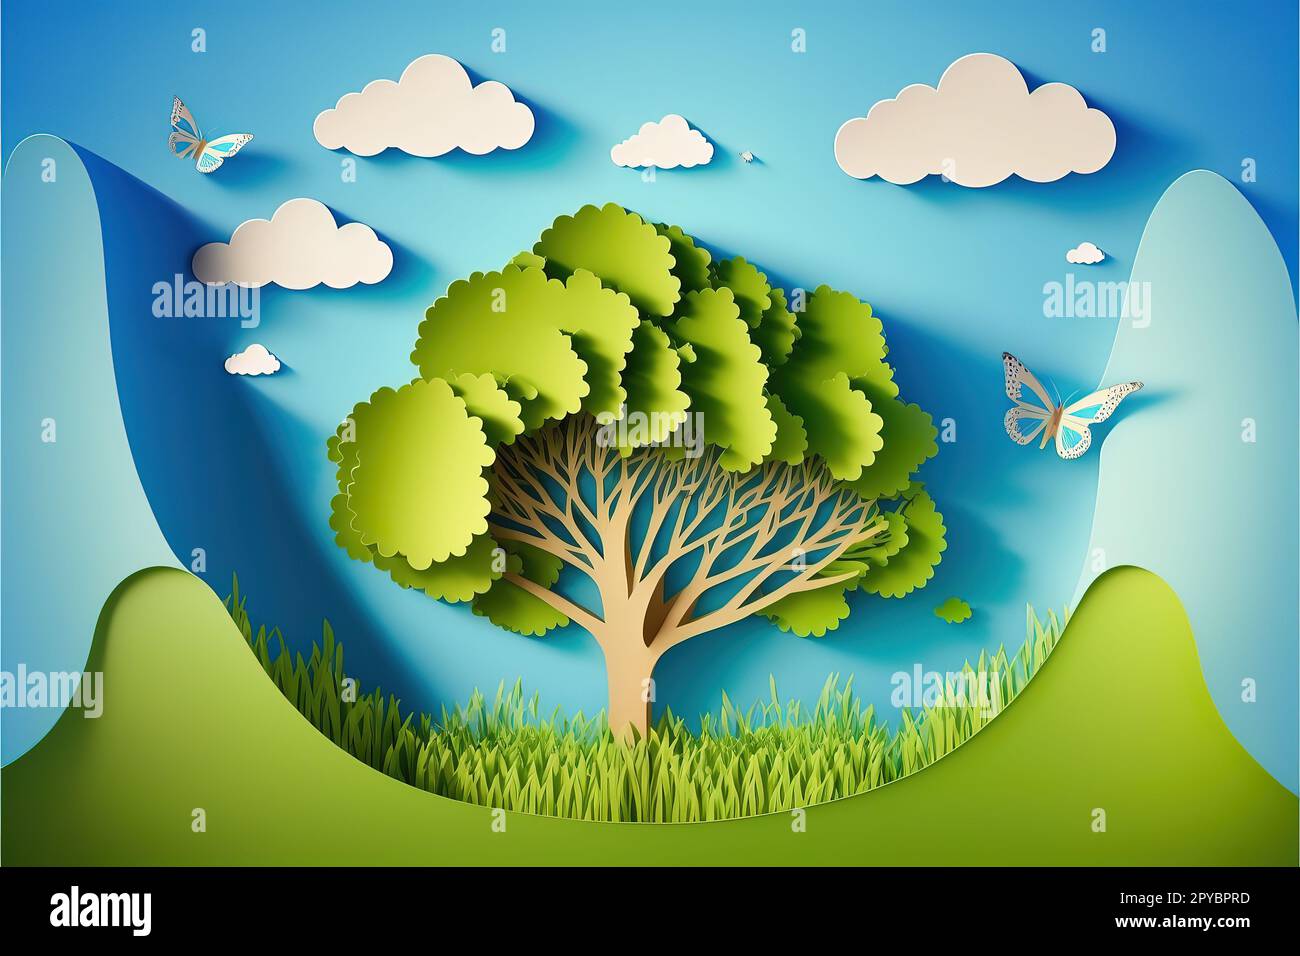 Schöne flauschige Wolke, blauer Himmelshintergrund, Sommersonne, Schmetterling, grüner Rasen, Papiergeschnittener Baum. Vektordarstellung. Umweltfreundliches Bannerdesign, Ökosystemkonzept Stockfoto